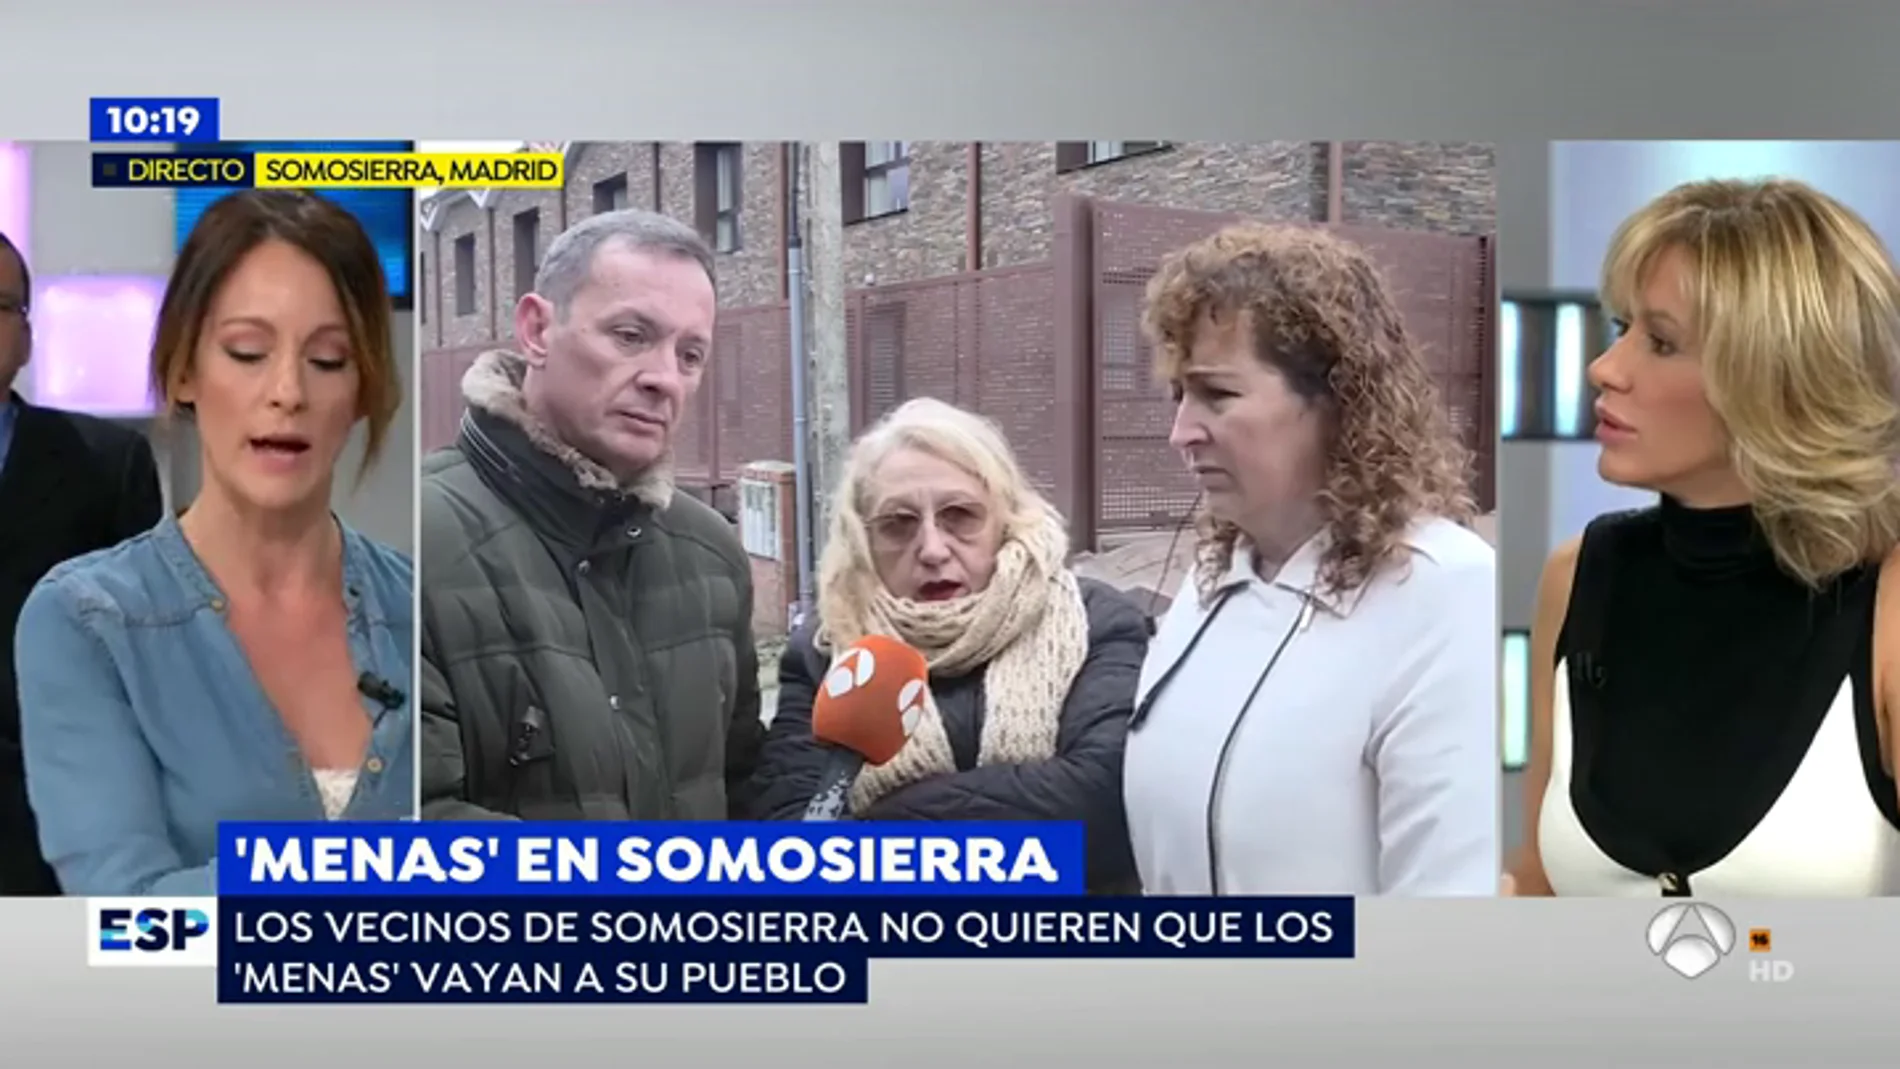 Los vecinos de Somosierra se niegan a convivir con los 'menas': "No me importa que traigan personas que realmente se puedan integrar, pero ellos no lo harán"